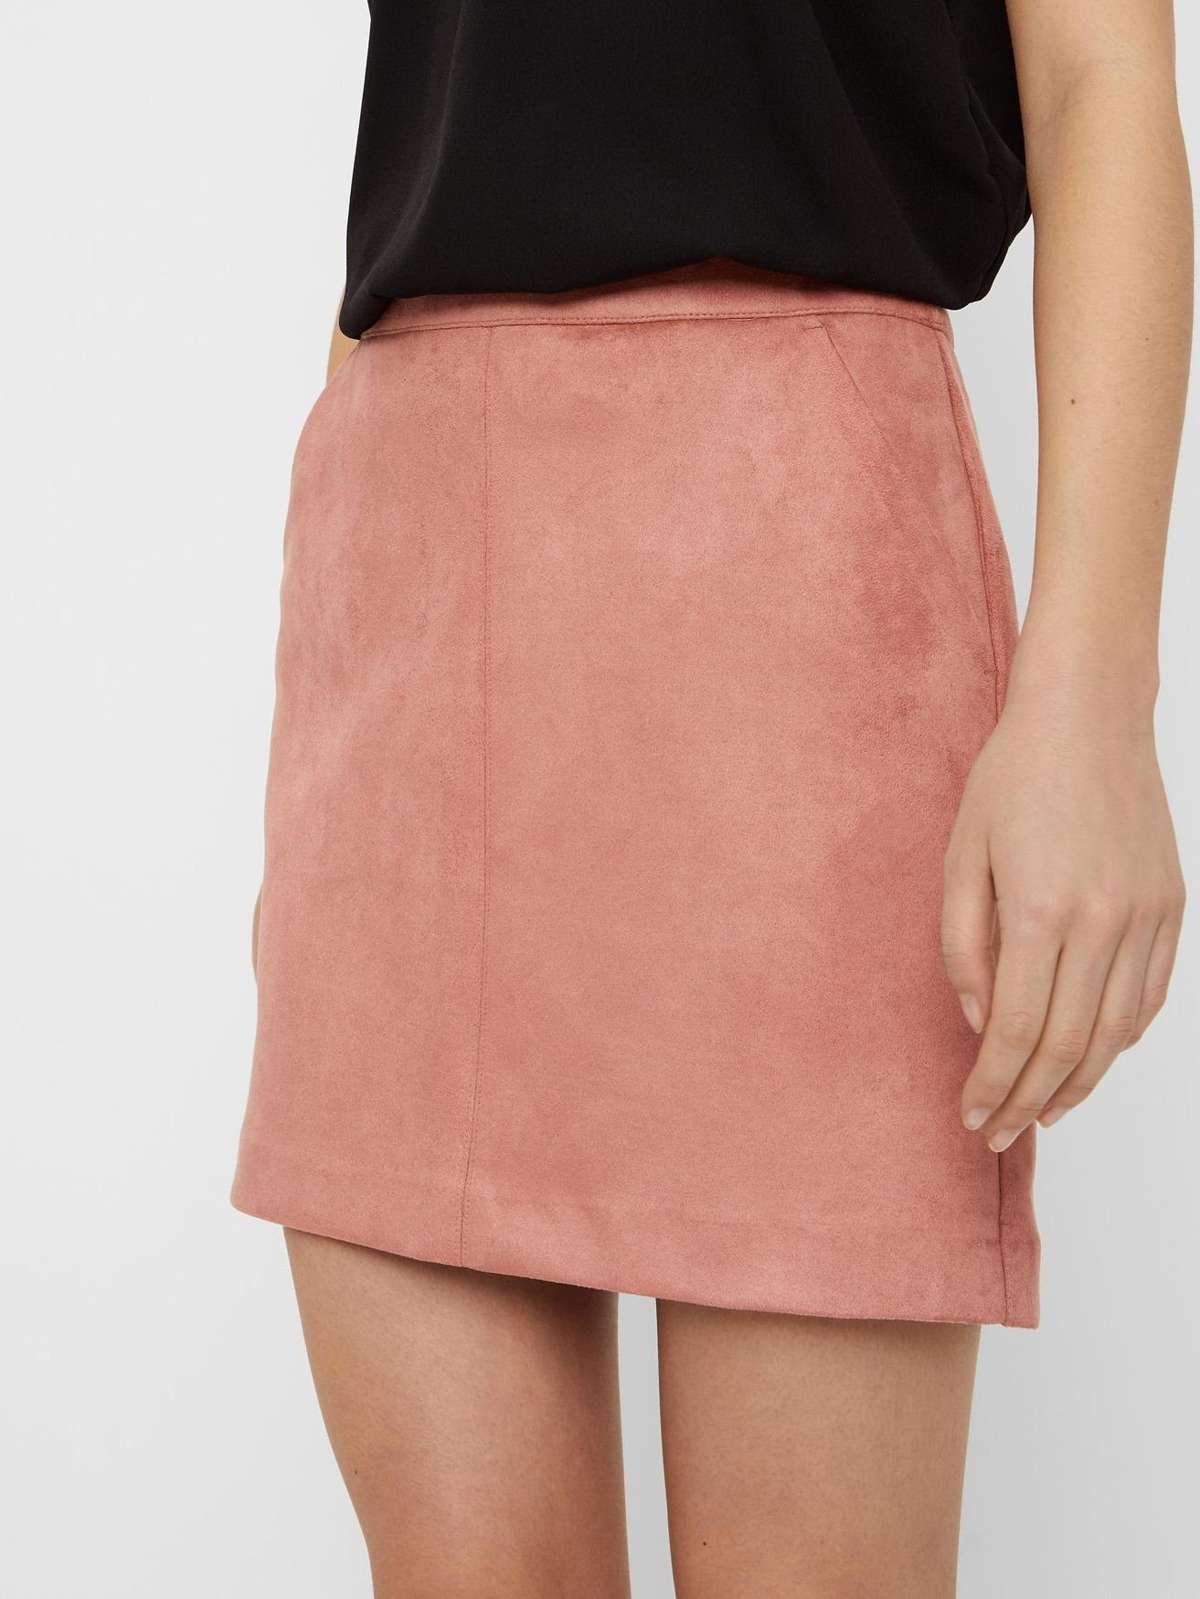 Летняя юбка велюровая мини-юбка из тонкого бархата Nicki SKIRT VMDONNADINA 5542 в розовом цвете-2